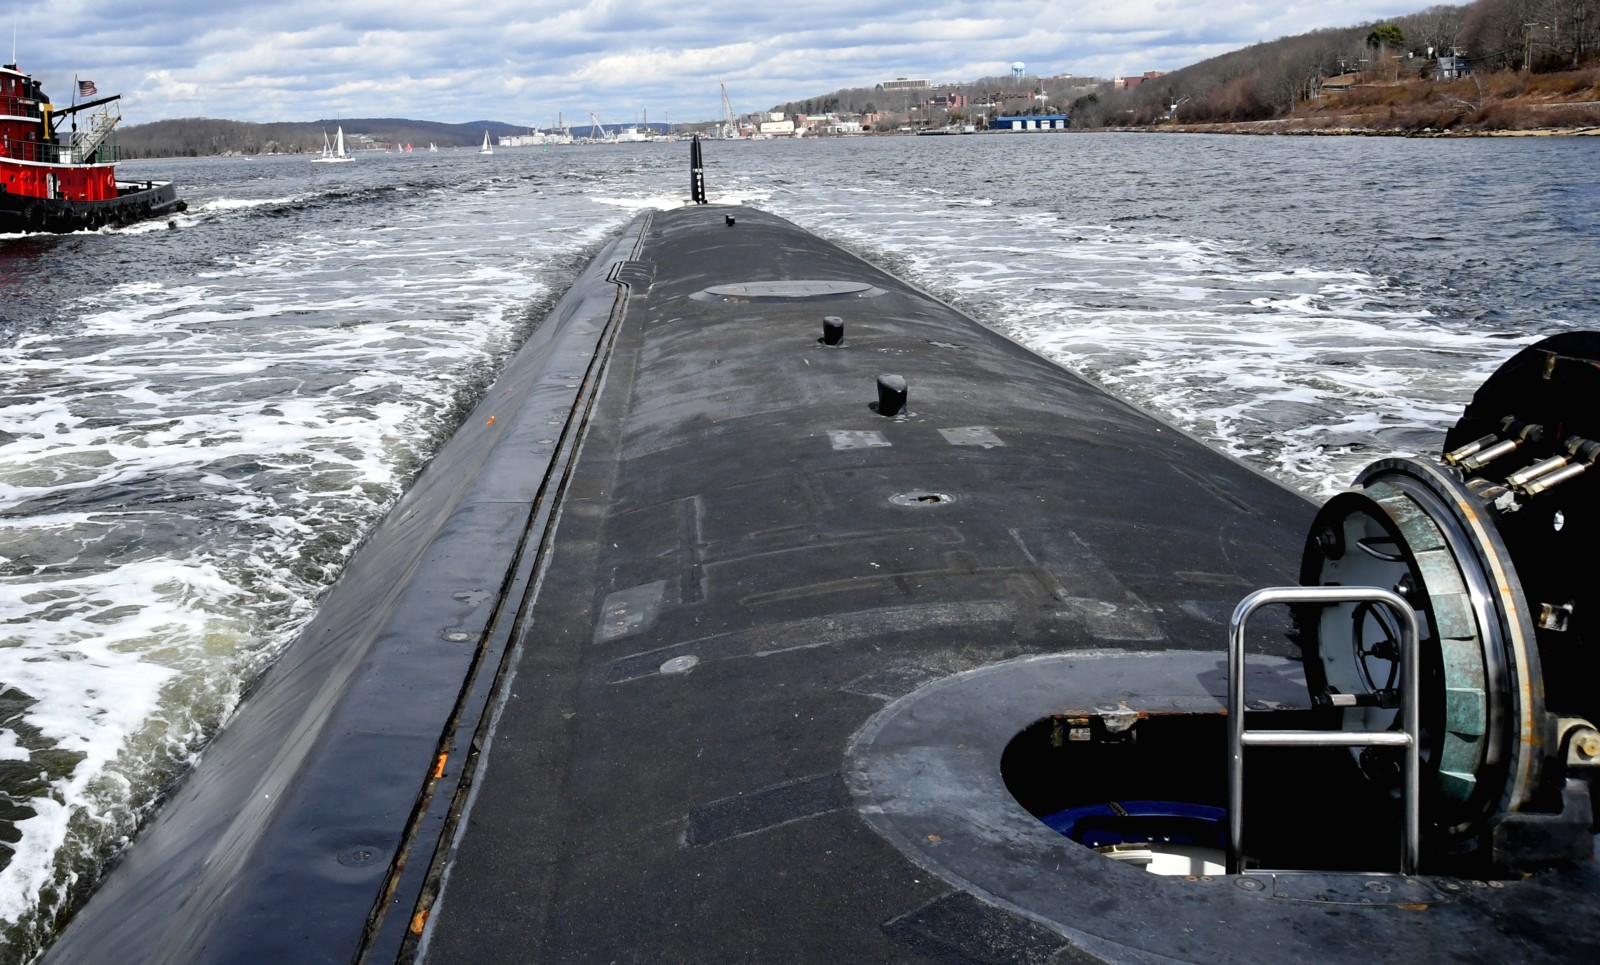 ssn-791 uss delaware virginia class attack submarine us navy 21